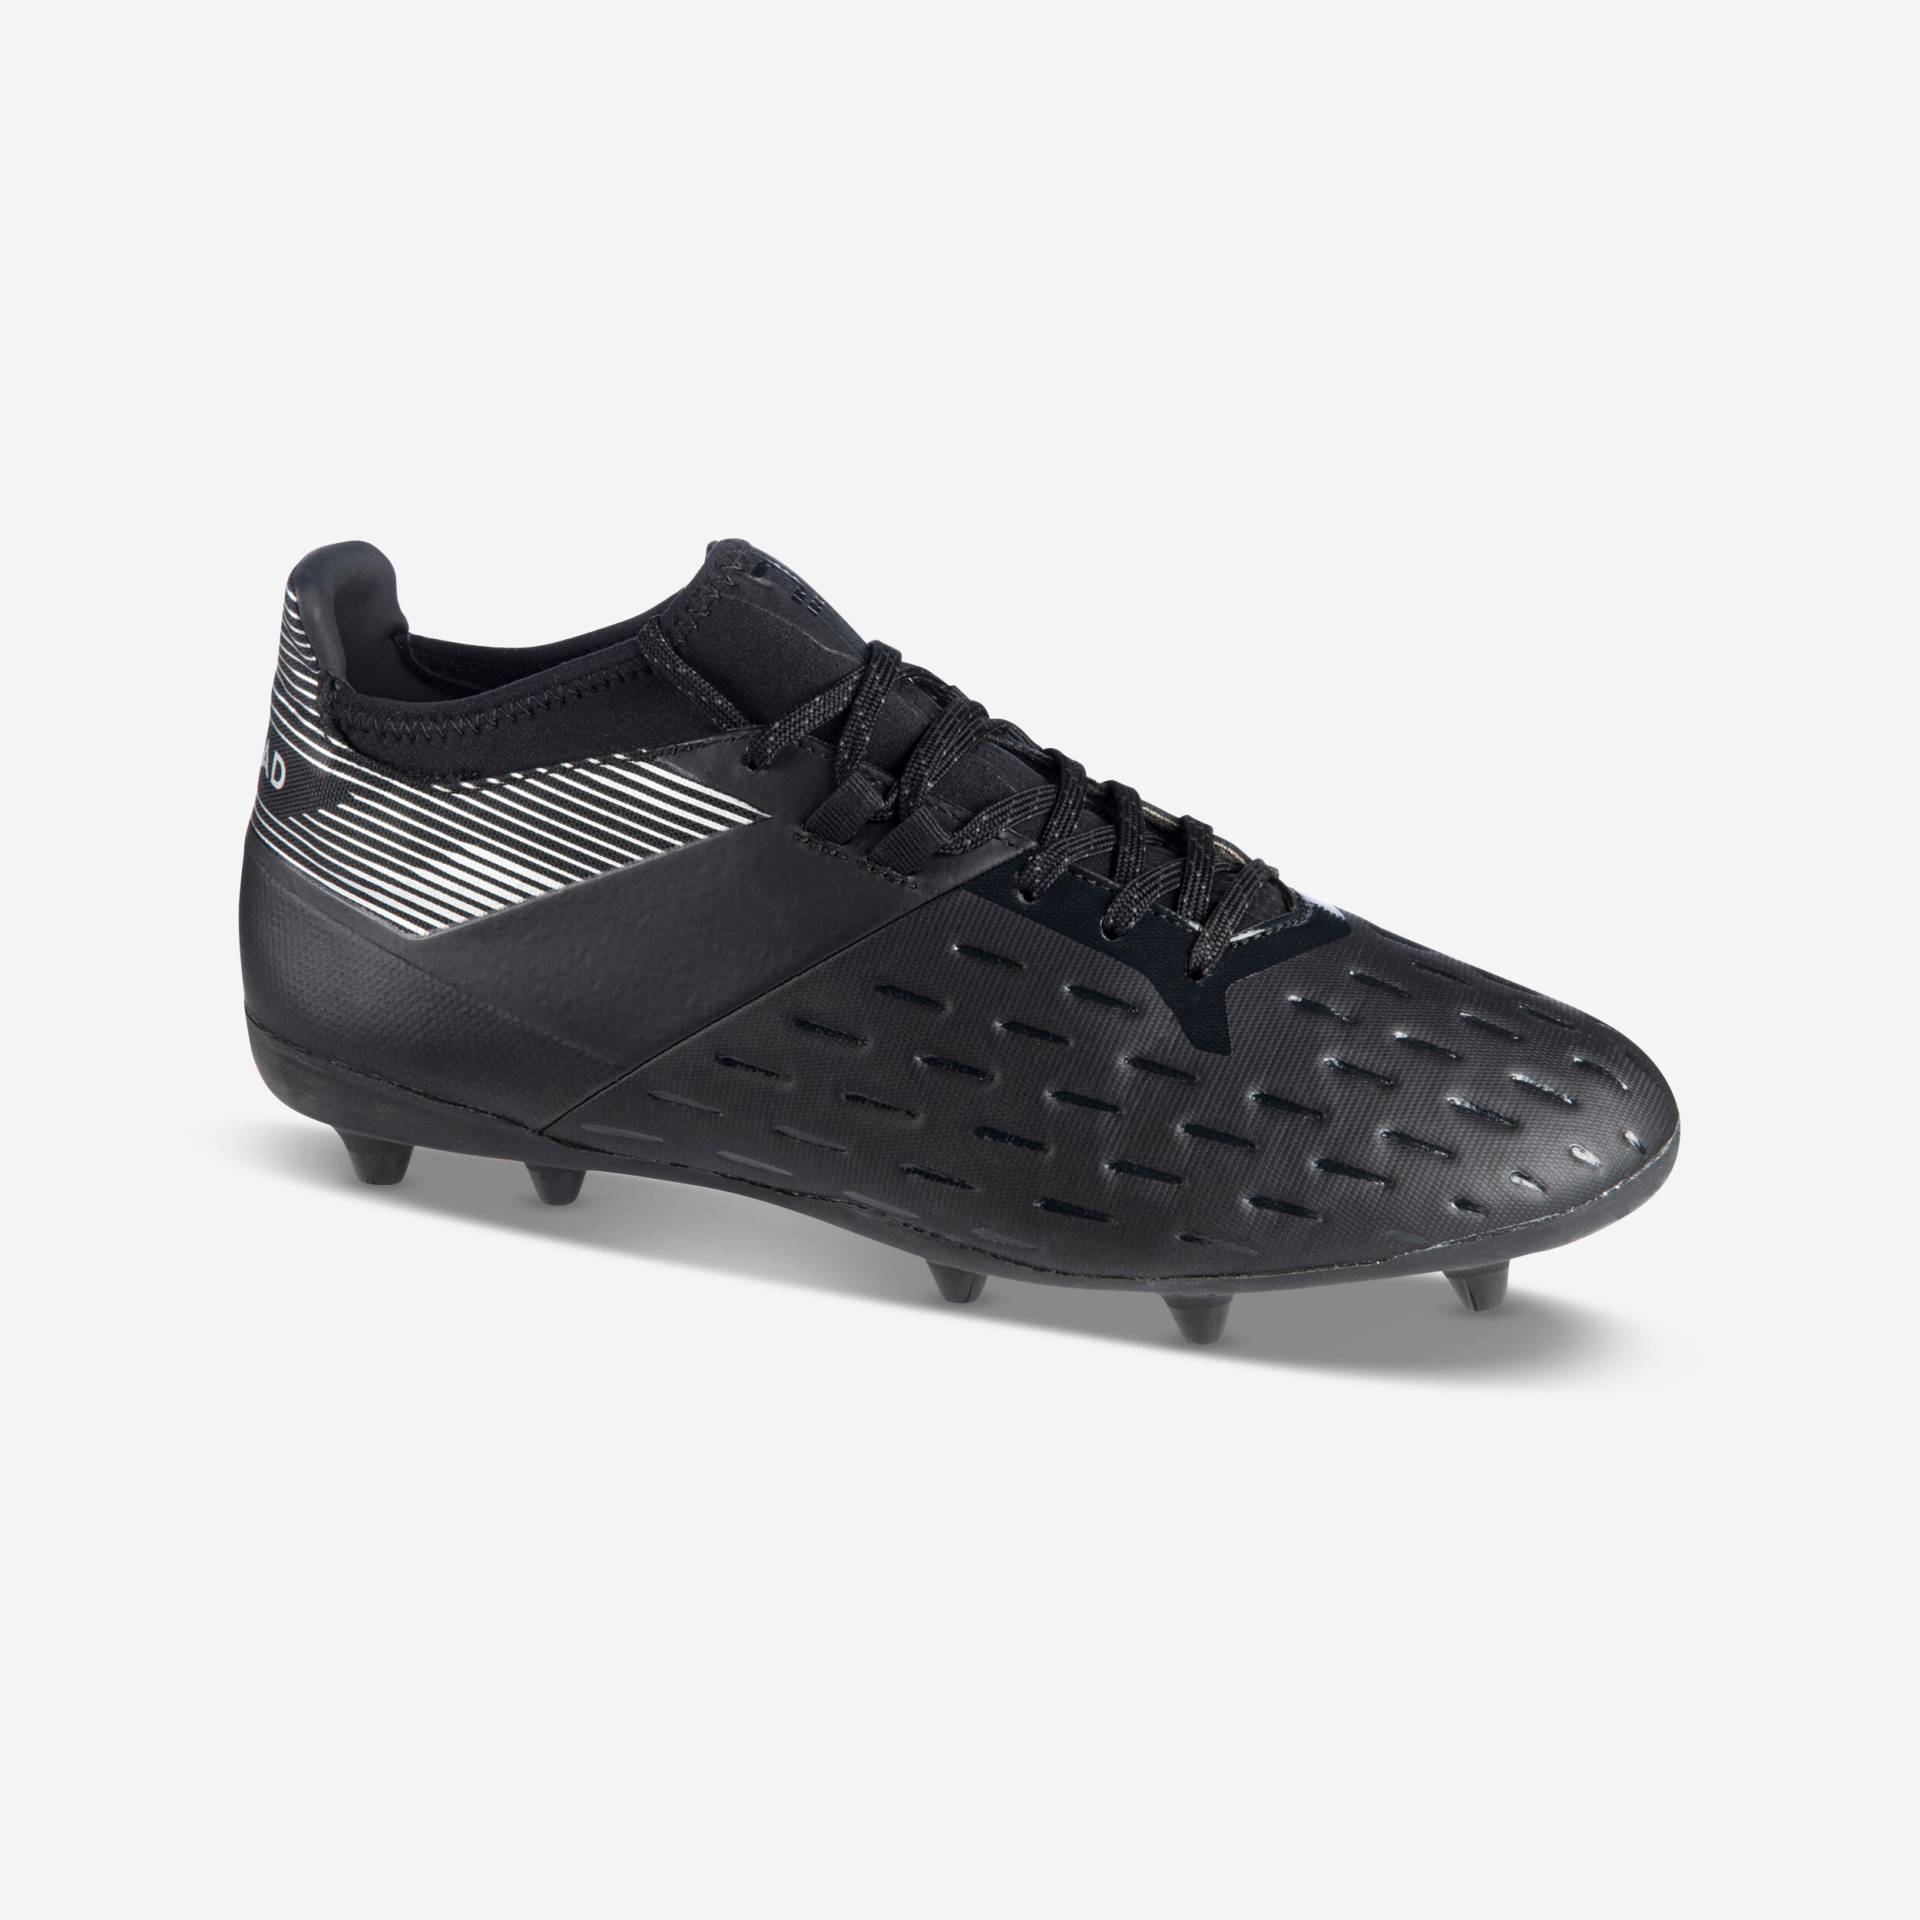 Damen/Herren Rugby Schuhe FG (trockener Boden) - Advance 500 schwarz/grau von OFFLOAD